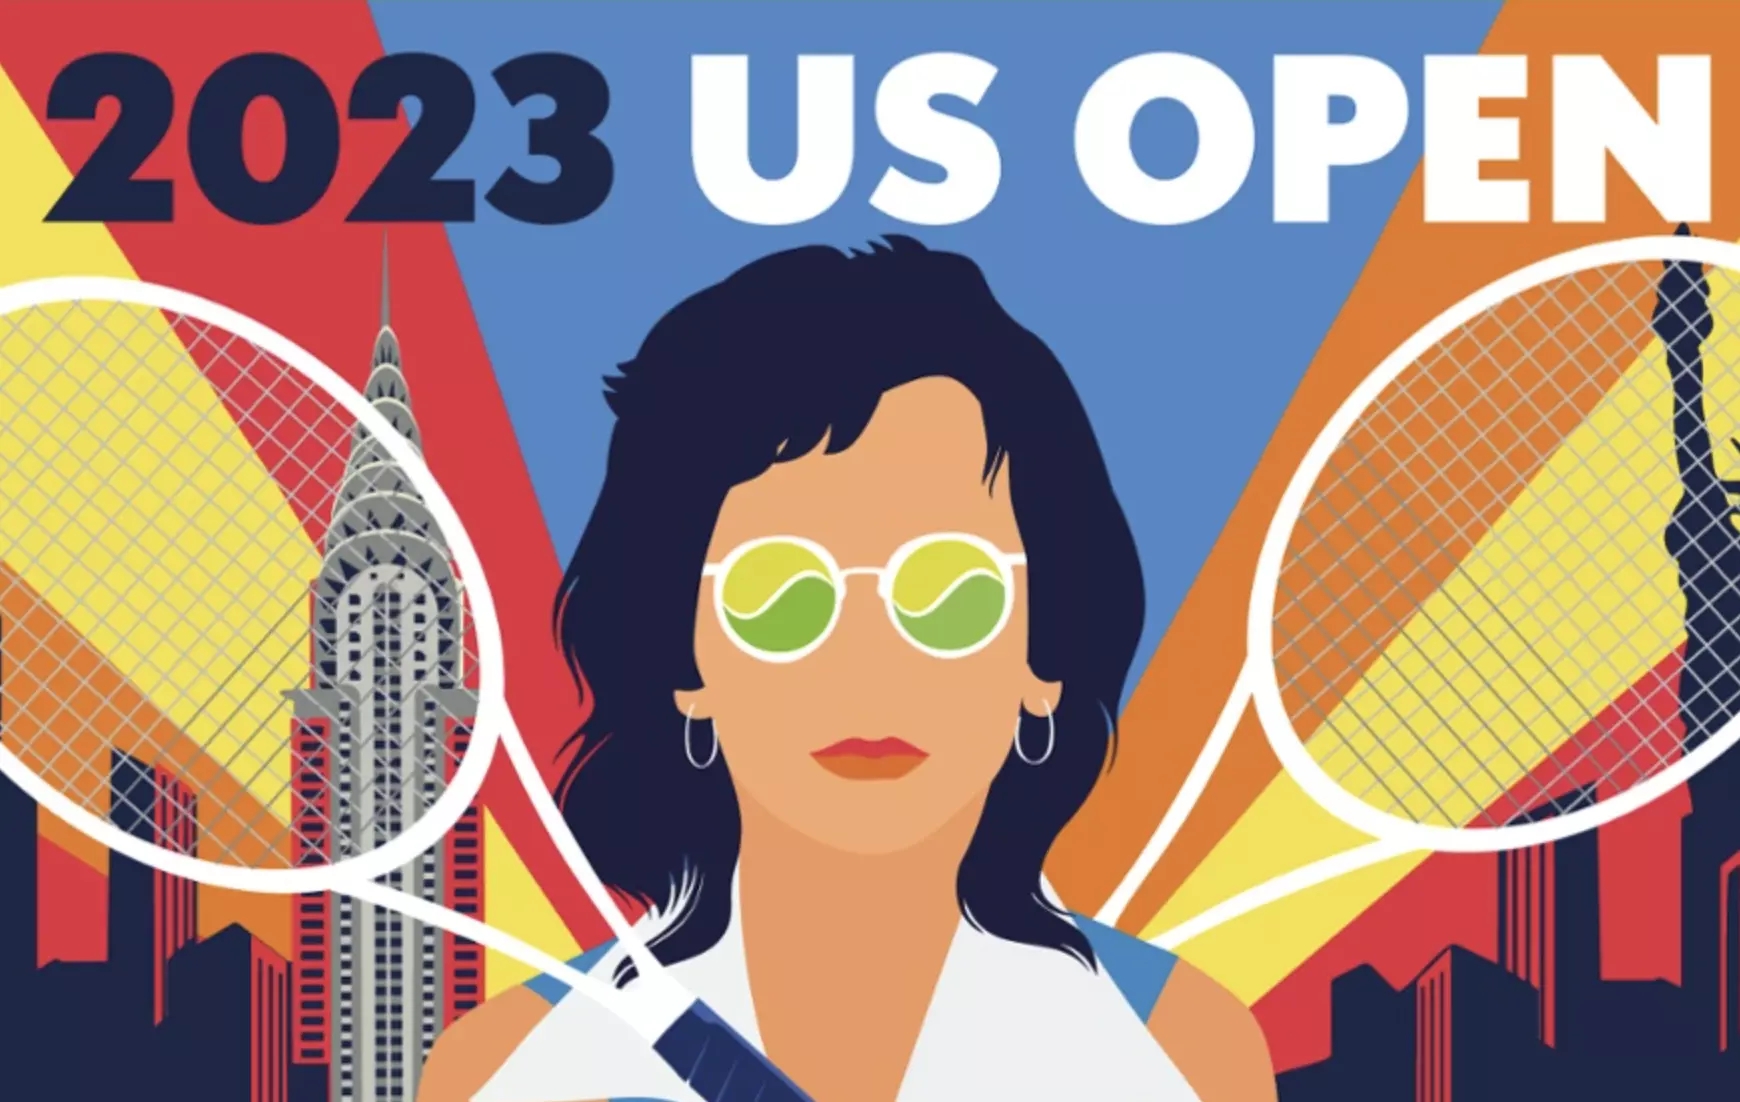 US Open Tennis 2023 - Casinova's assessment